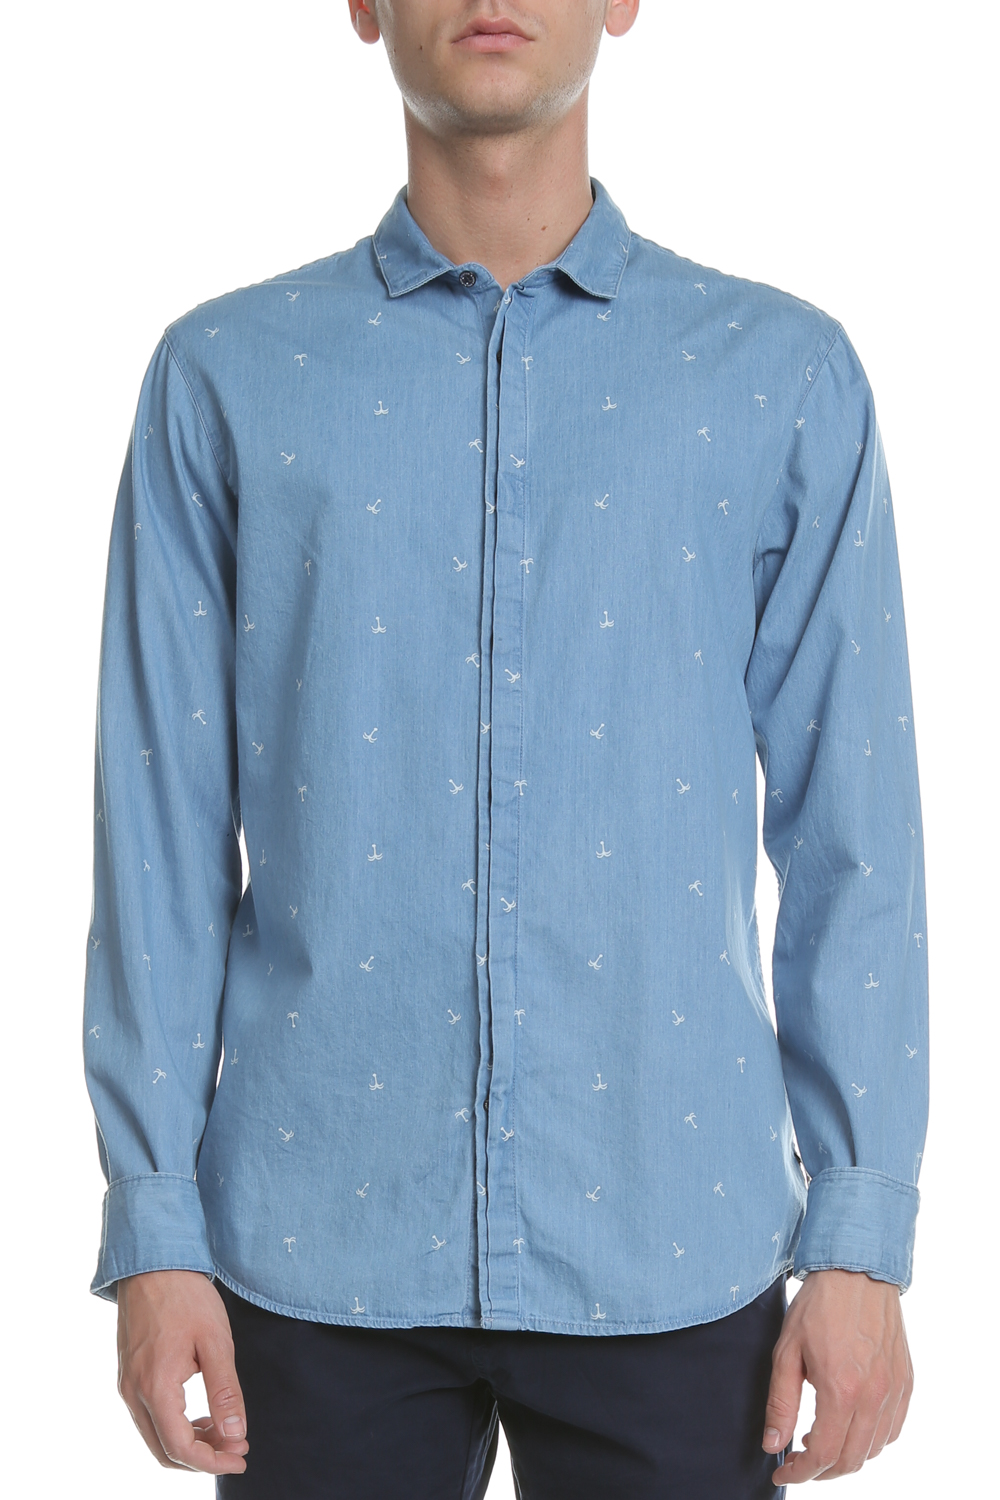 SCOTCH & SODA SCOTCH & SODA - Ανδρικό τζιν πουκάμισο SCOTCH & SODA Amsterdams Blauw γαλάζιο